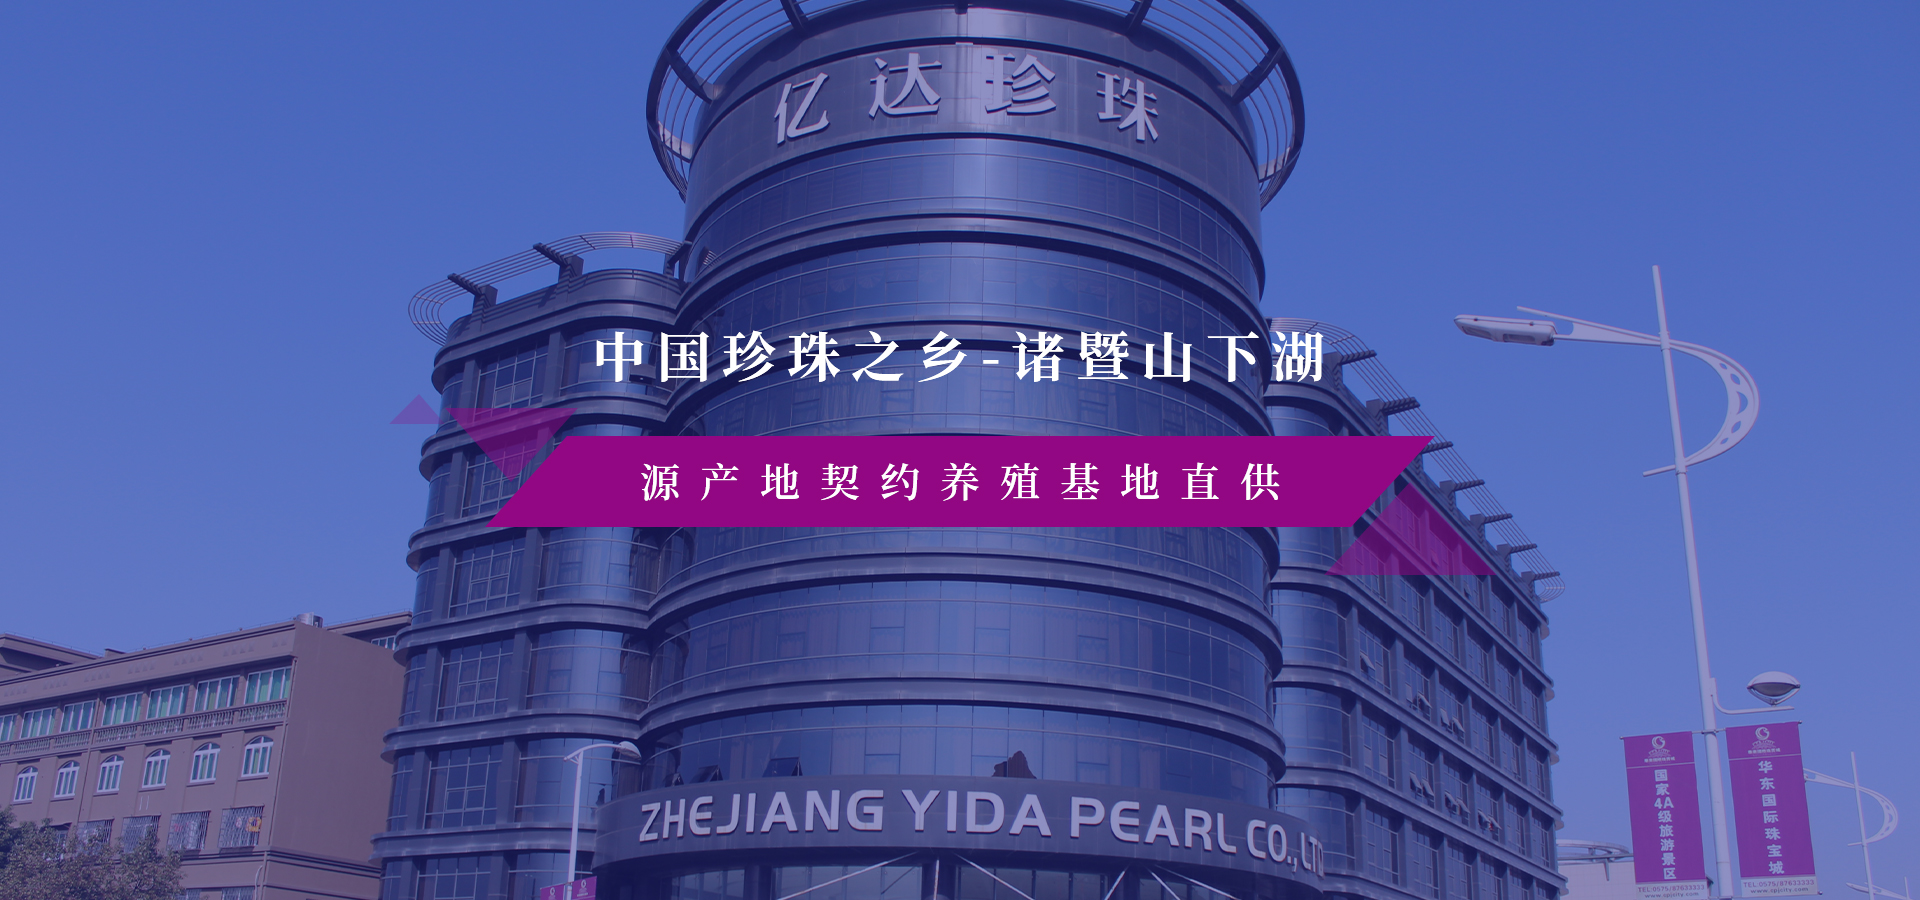 网站首页-Zhejiang Yida pearl Co., Ltd. 